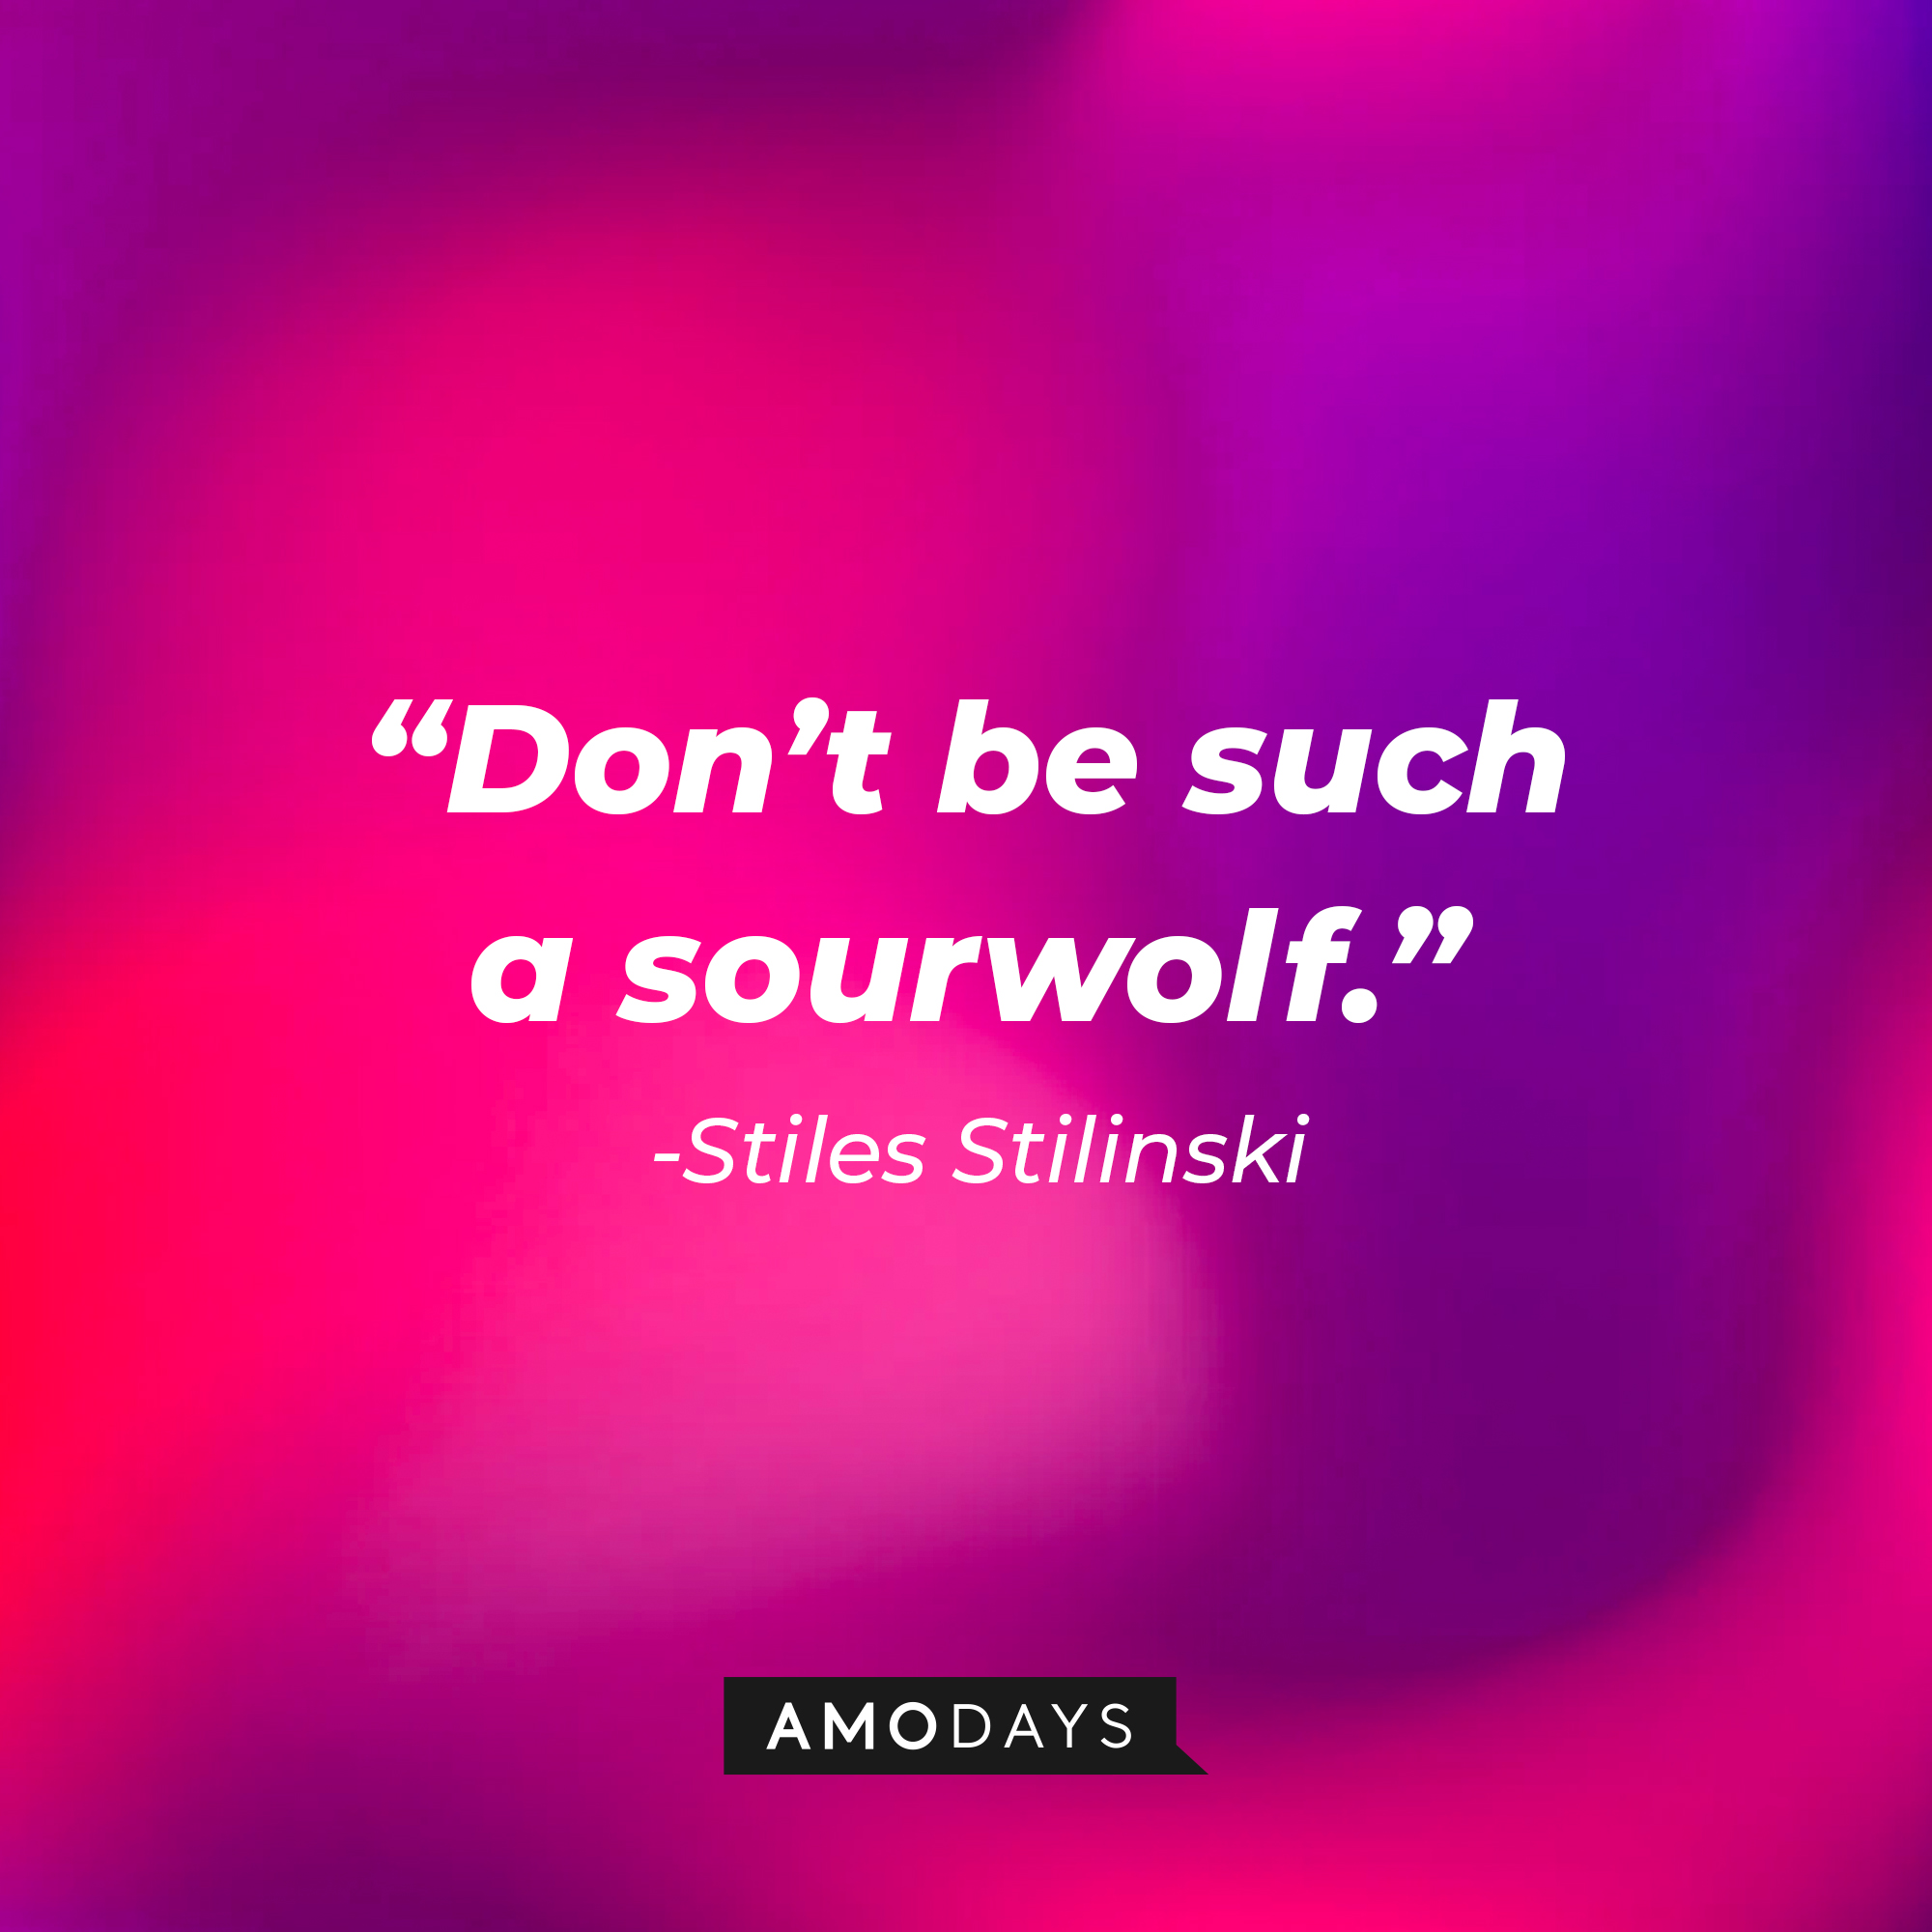 Stiles Stilinski's quote: "Don’t be such a sourwolf." | Image: AmoDays